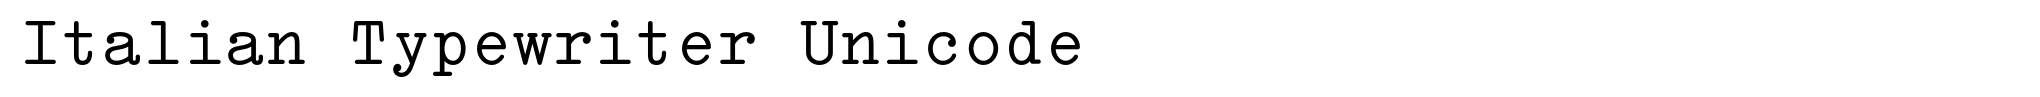 Italian Typewriter Unicode image